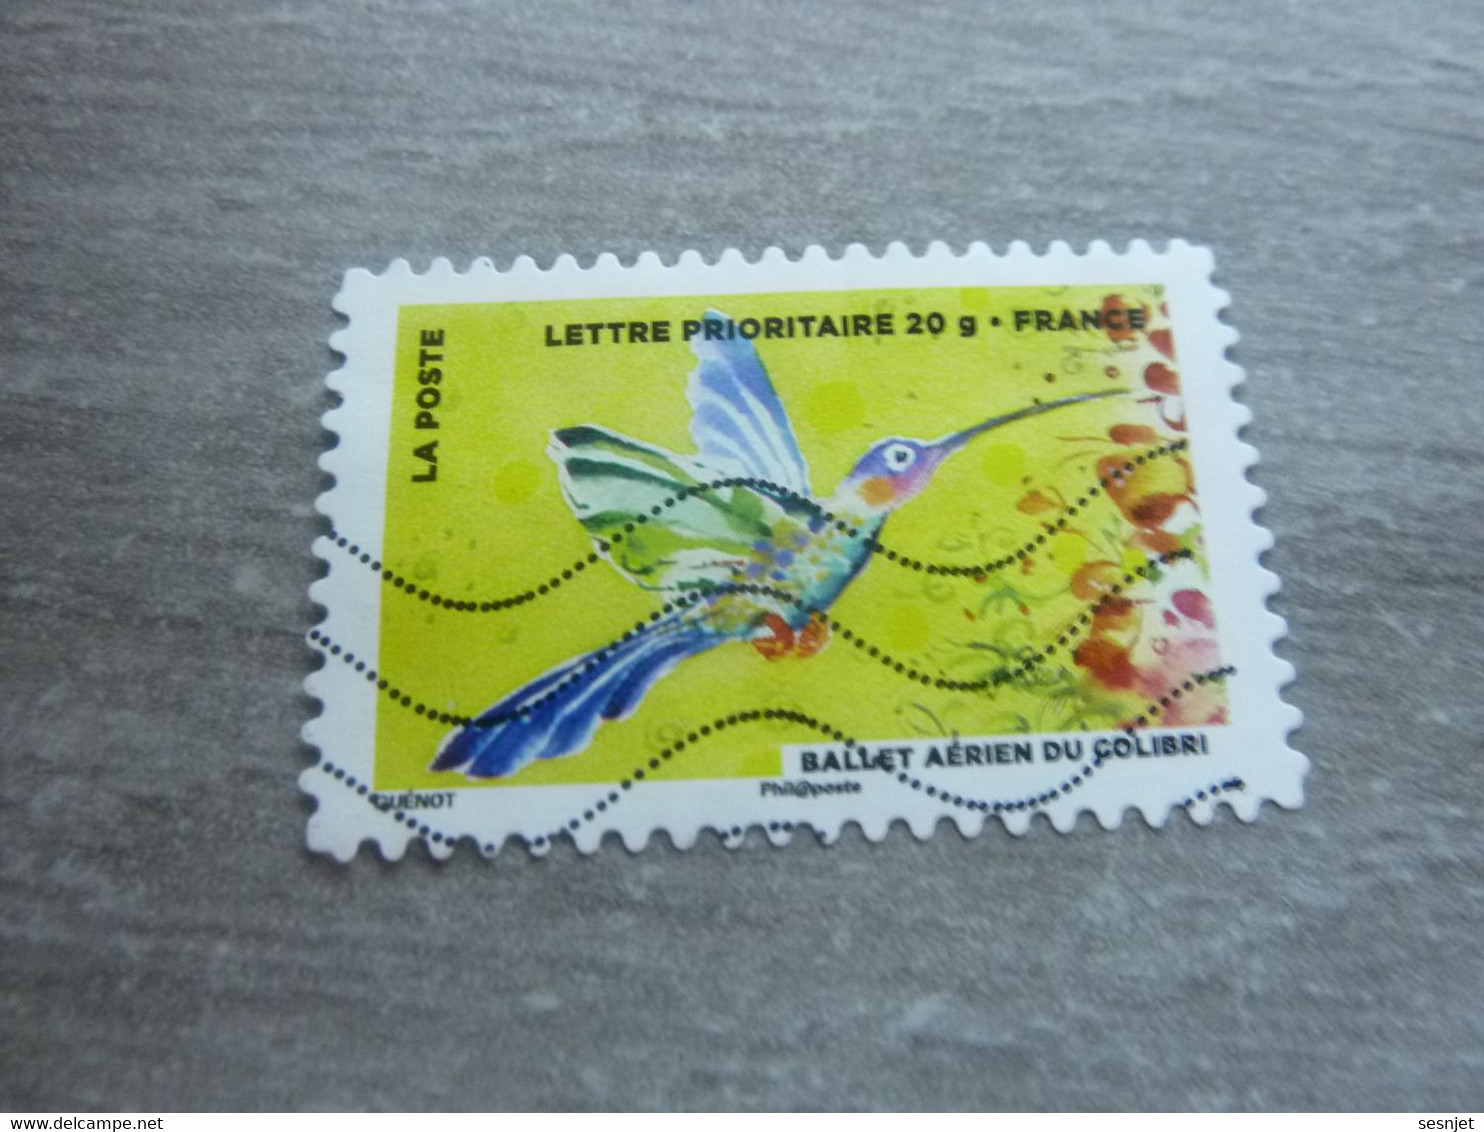 L'Air - Ballet Aérien Du Colibri - Lp 20 G - Yt Aa 896 - Multicolore - Oblitéré - Année 2013 - - Hummingbirds